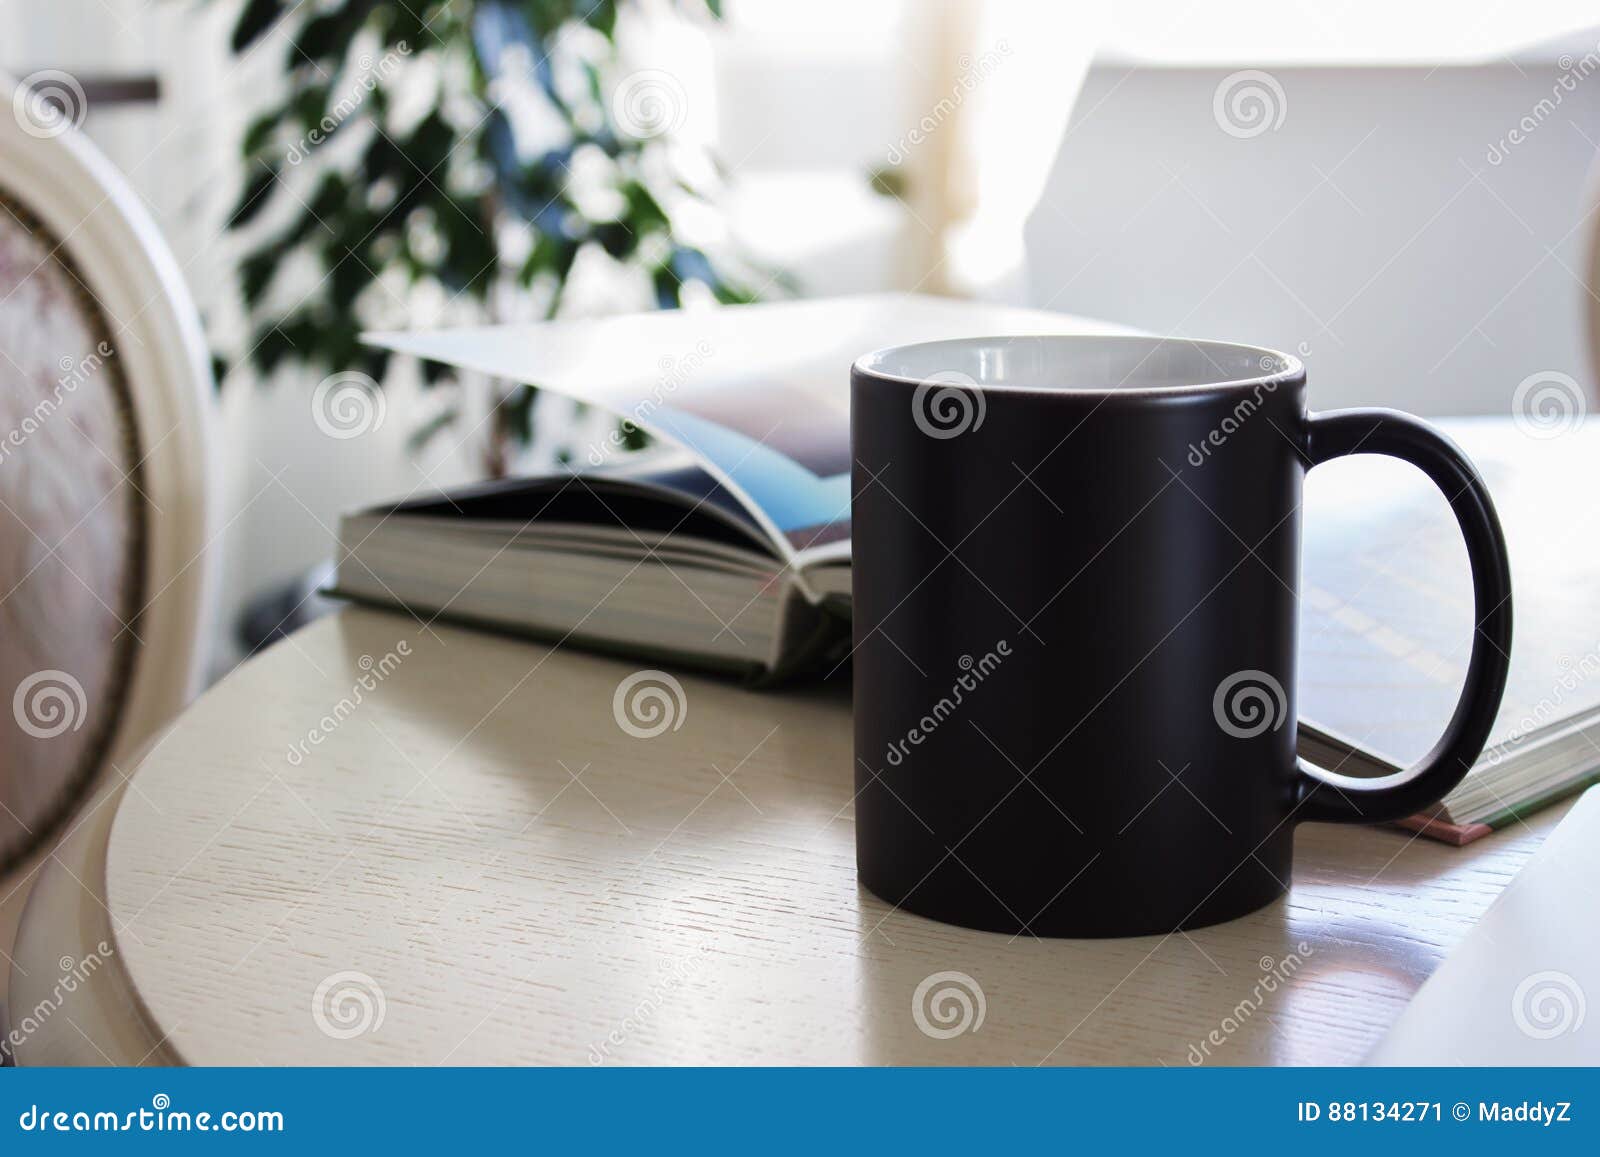 black mug, cup on a table, mockup